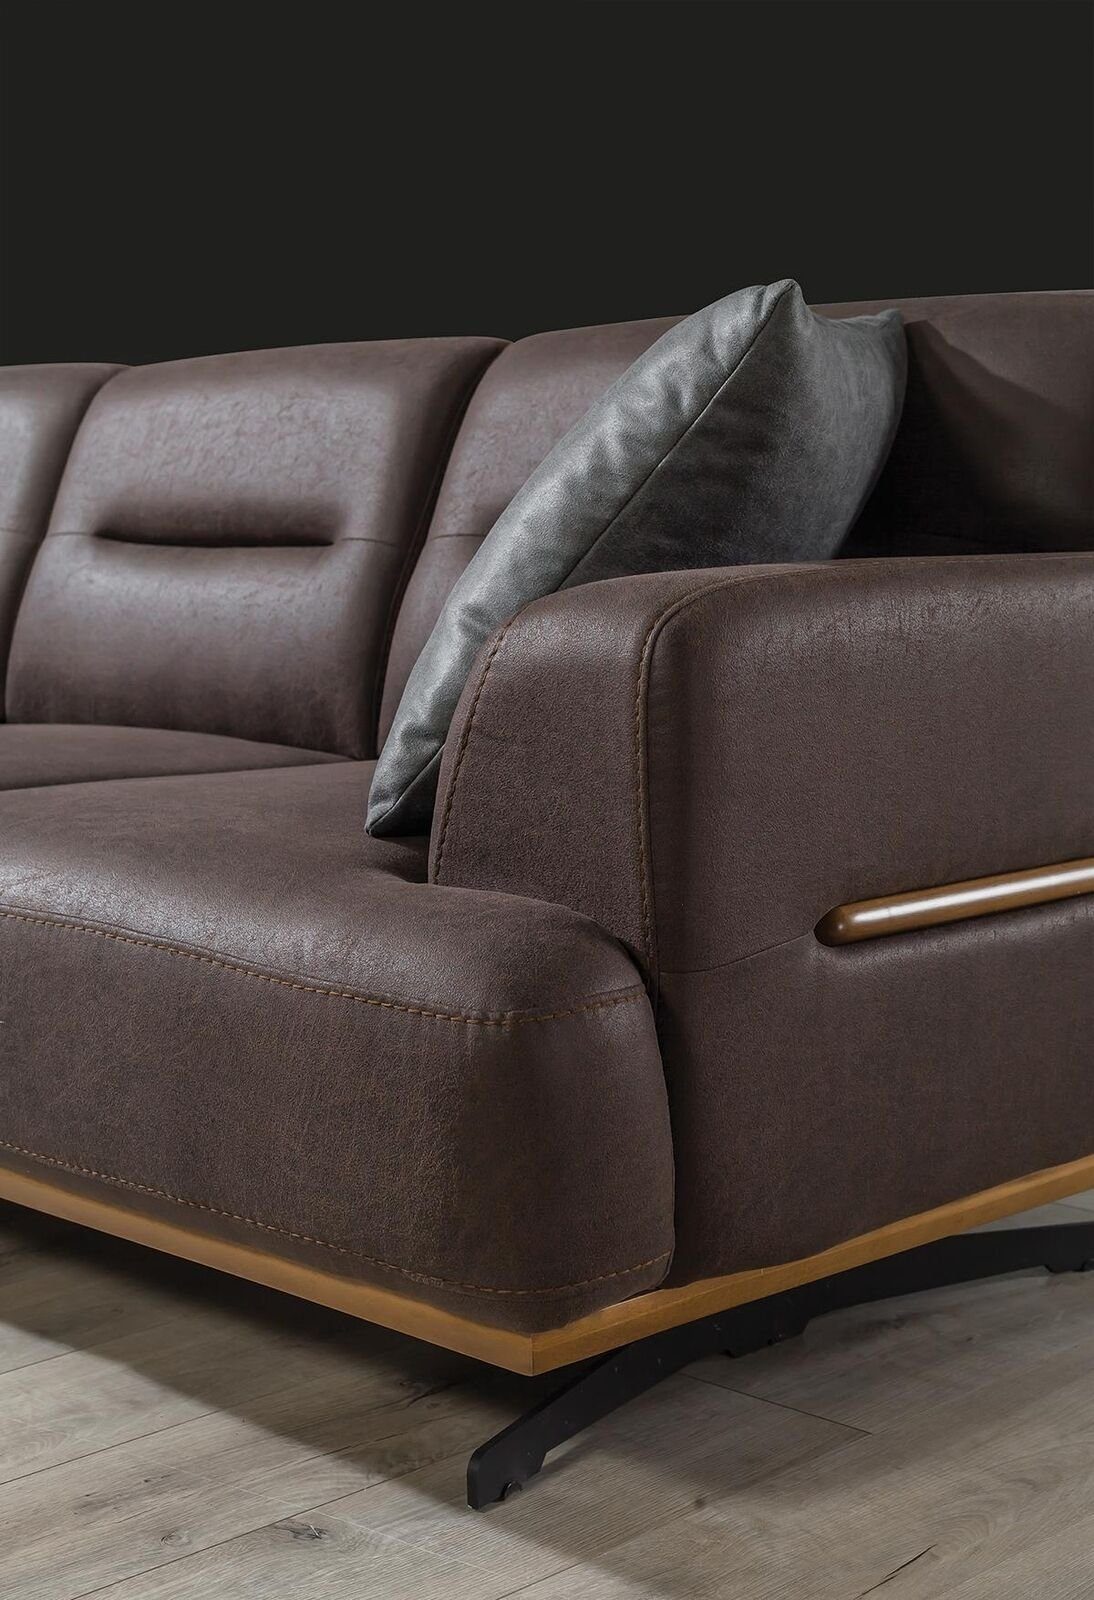 3 Teile, Sofa Europa Made Couch Braun Sitzpolster in Möbel Modern Sofa JVmoebel Dreisitzer, Leder Sitz 1